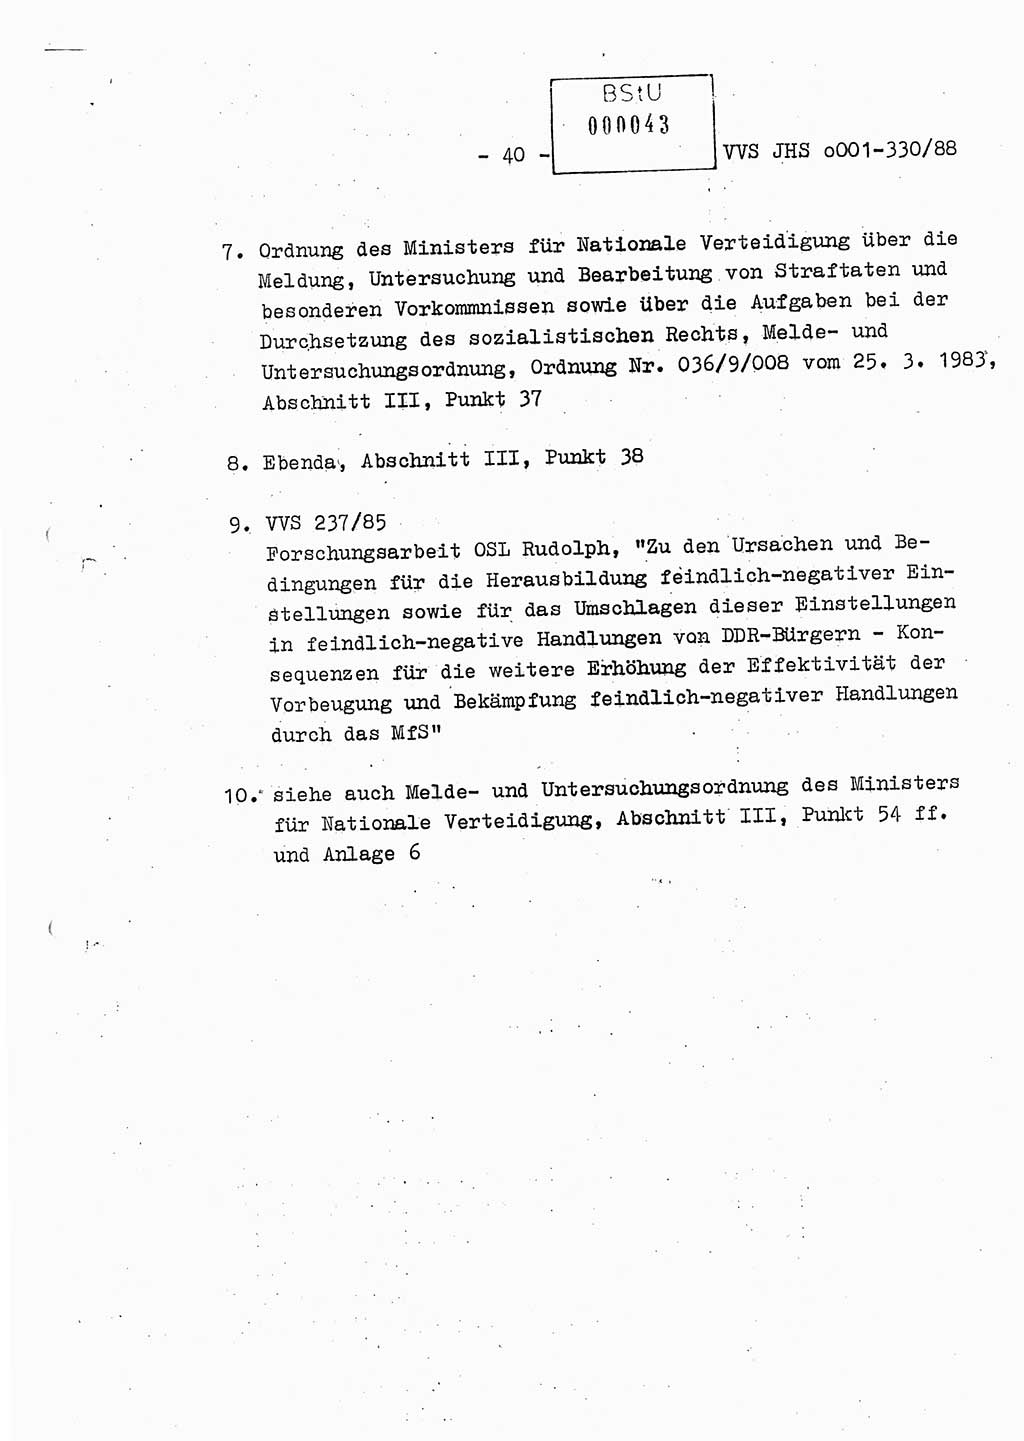 Diplomarbeit Offiziersschüler Thomas Mühle (HA Ⅸ/6), Ministerium für Staatssicherheit (MfS) [Deutsche Demokratische Republik (DDR)], Juristische Hochschule (JHS), Vertrauliche Verschlußsache (VVS) o001-330/88, Potsdam 1988, Seite 40 (Dipl.-Arb. MfS DDR JHS VVS o001-330/88 1988, S. 40)